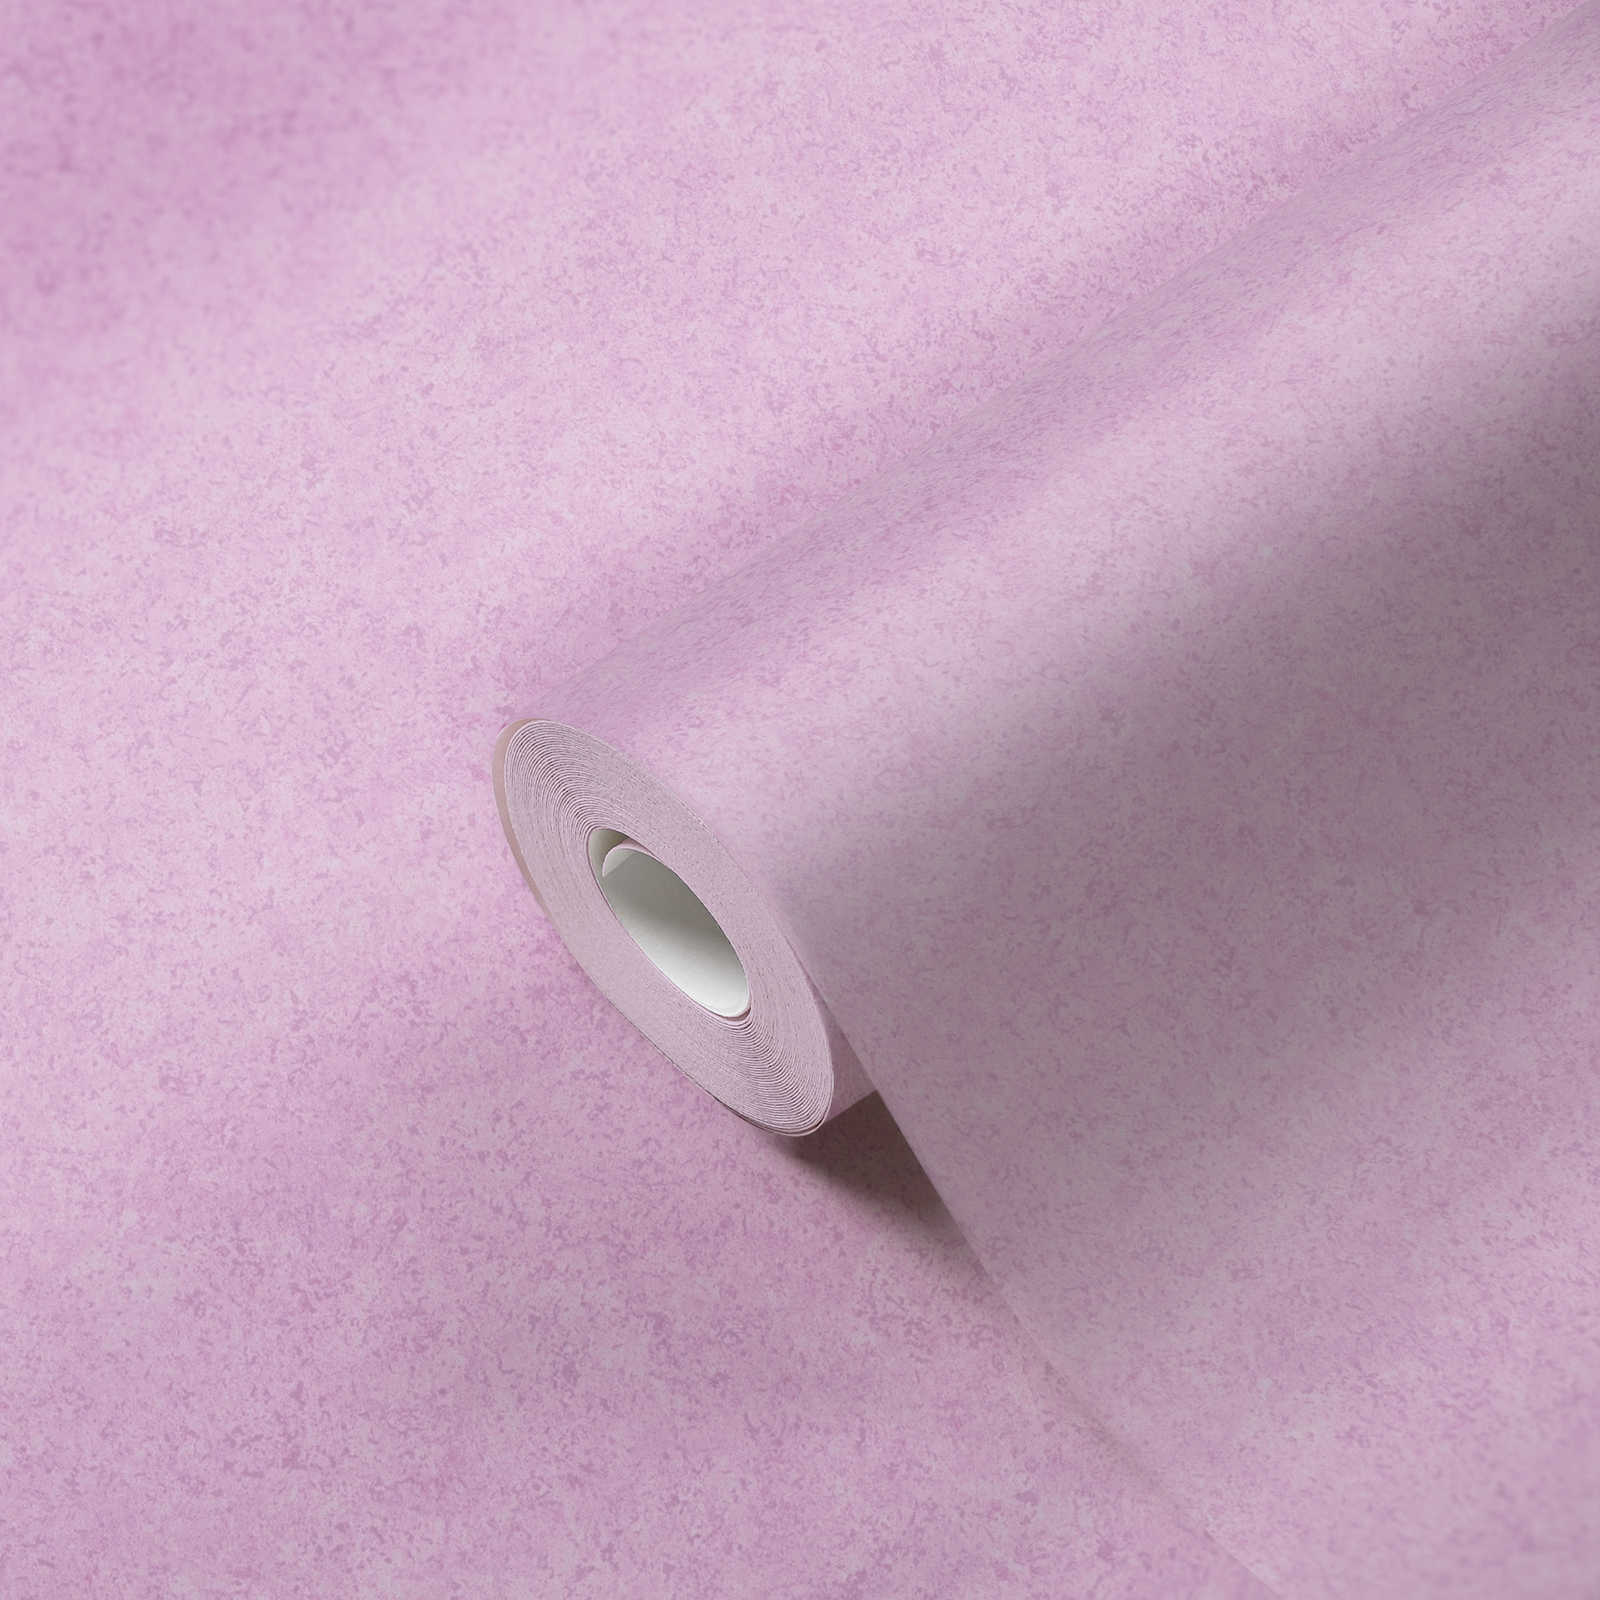             Carta da parati in tessuto non tessuto rosa effetto intonaco con motivo opaco - rosa
        